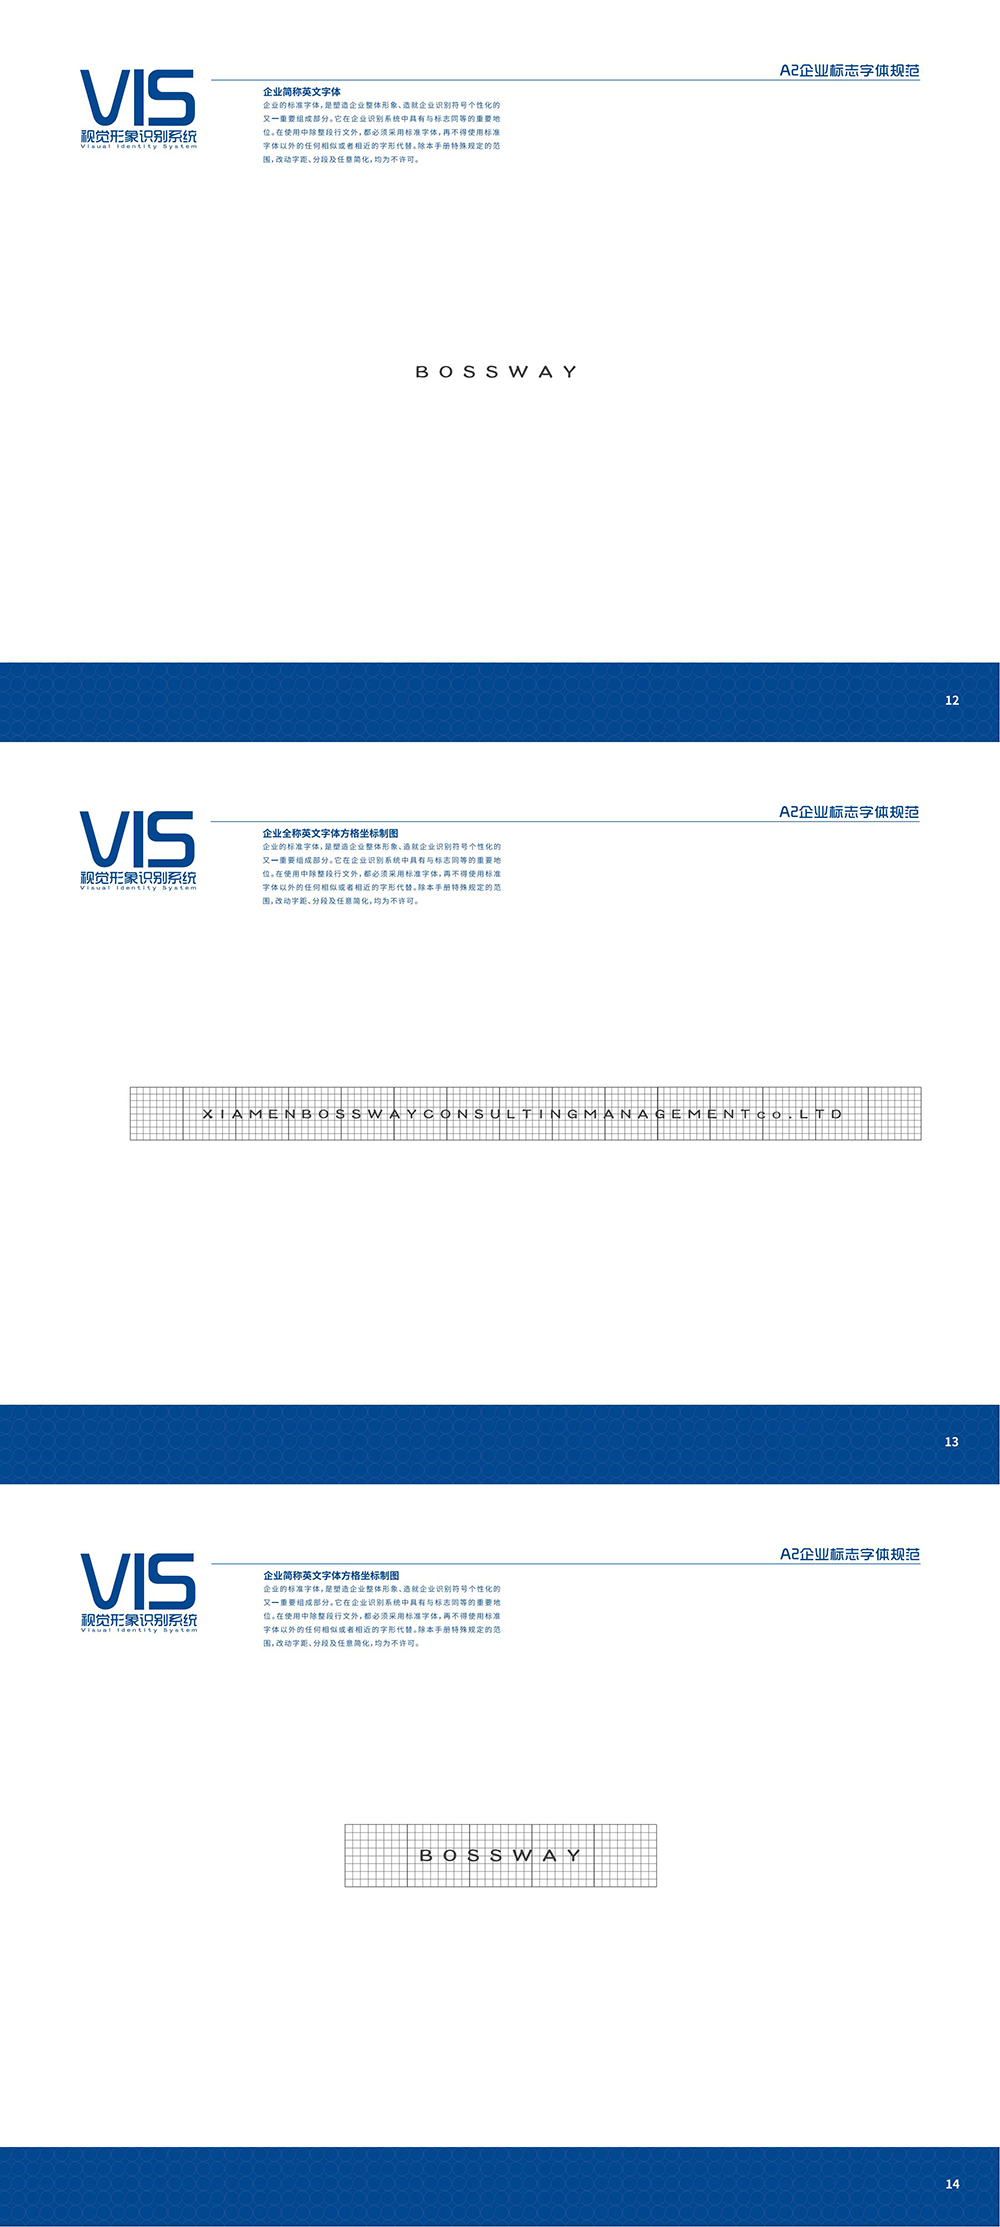 VIS视觉形象系统_00_06.jpg